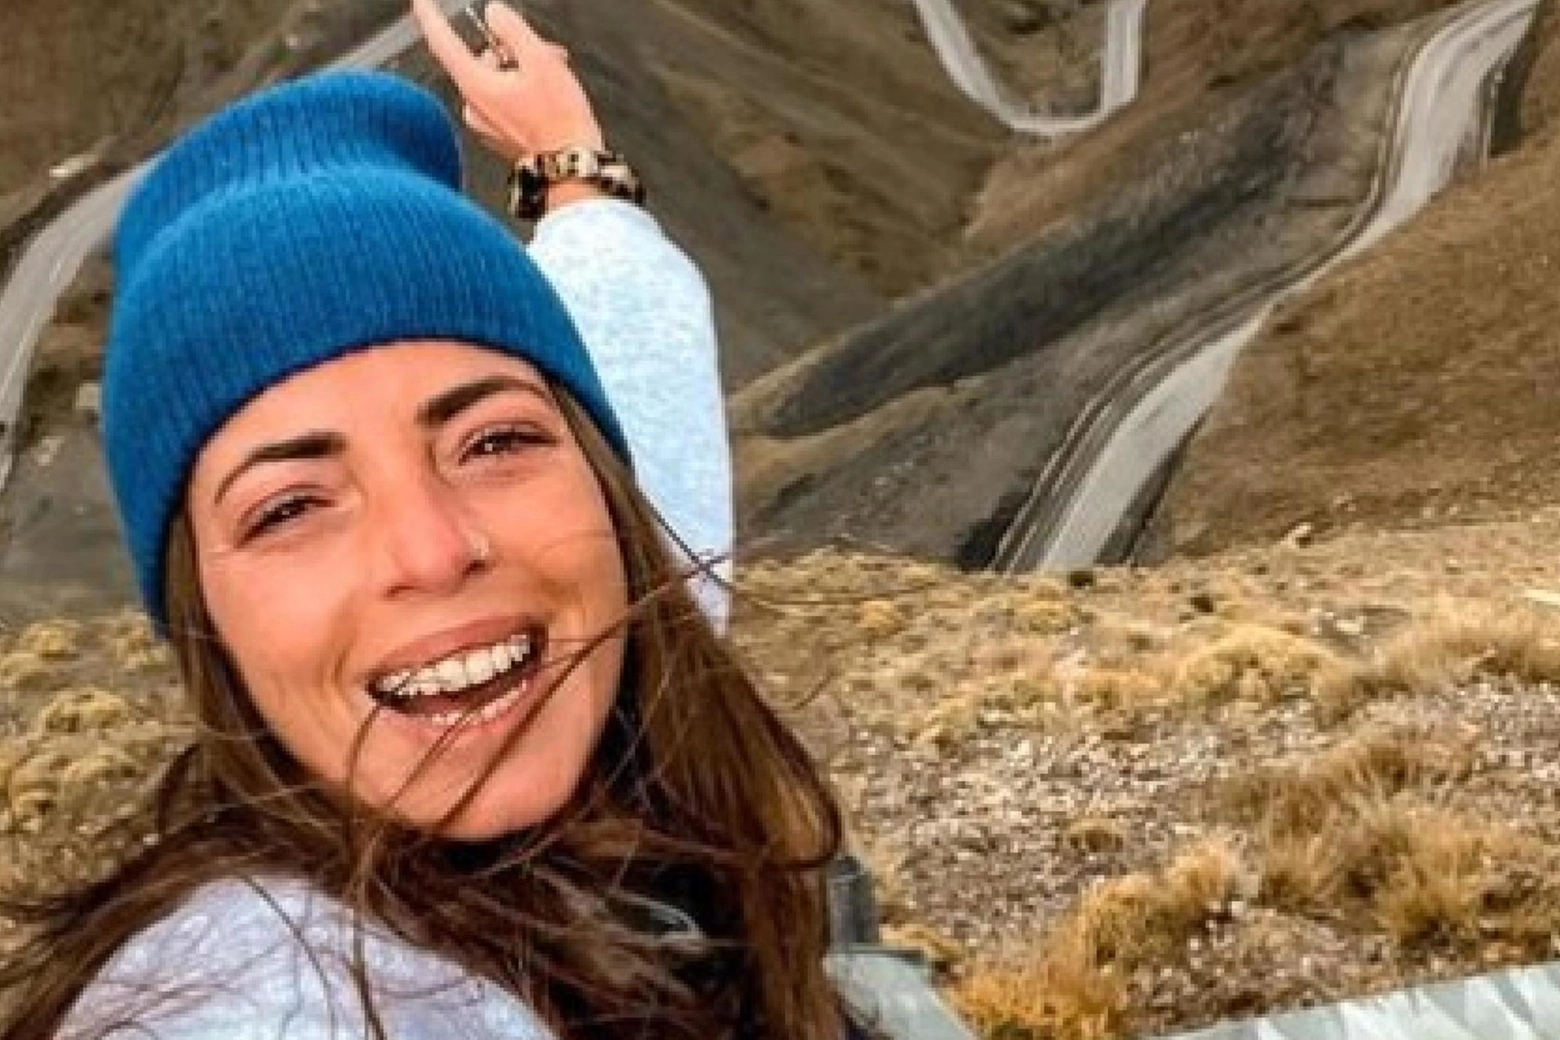 Alessia Piperno, travel blogger romana di 30 anni, arrestata il 28 settembre